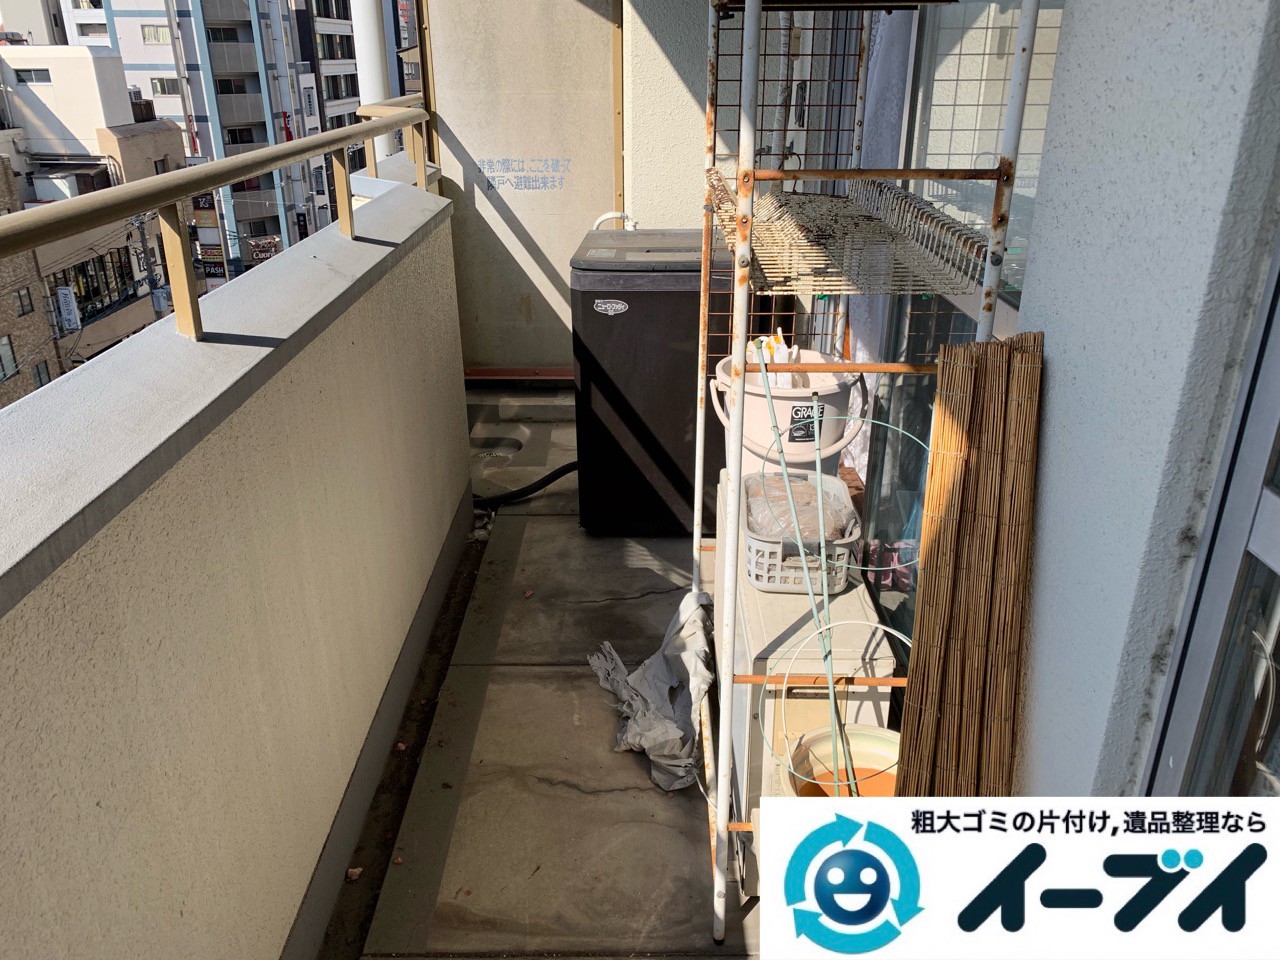 2019年5月19日大阪府大阪市東大阪市でベランダの不用品回収。写真1